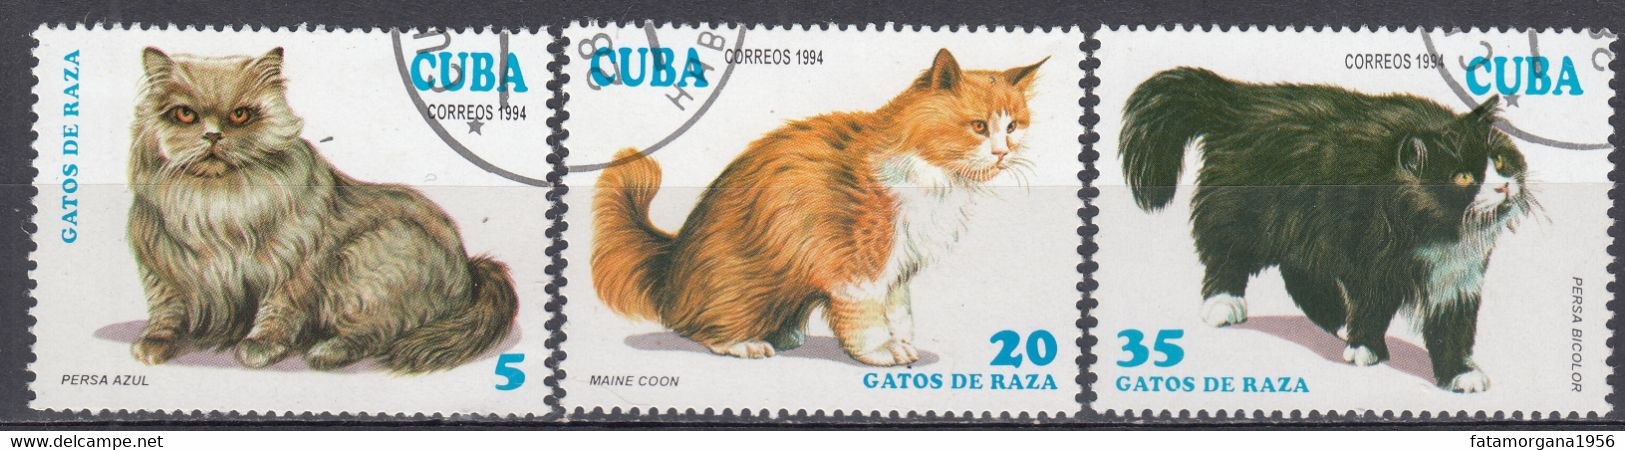 CUBA - 1994 - Lotto Di 3 Valori usati: Yvert 3351, 3353 E 3355, rappresentanti Gatti. - Gebruikt